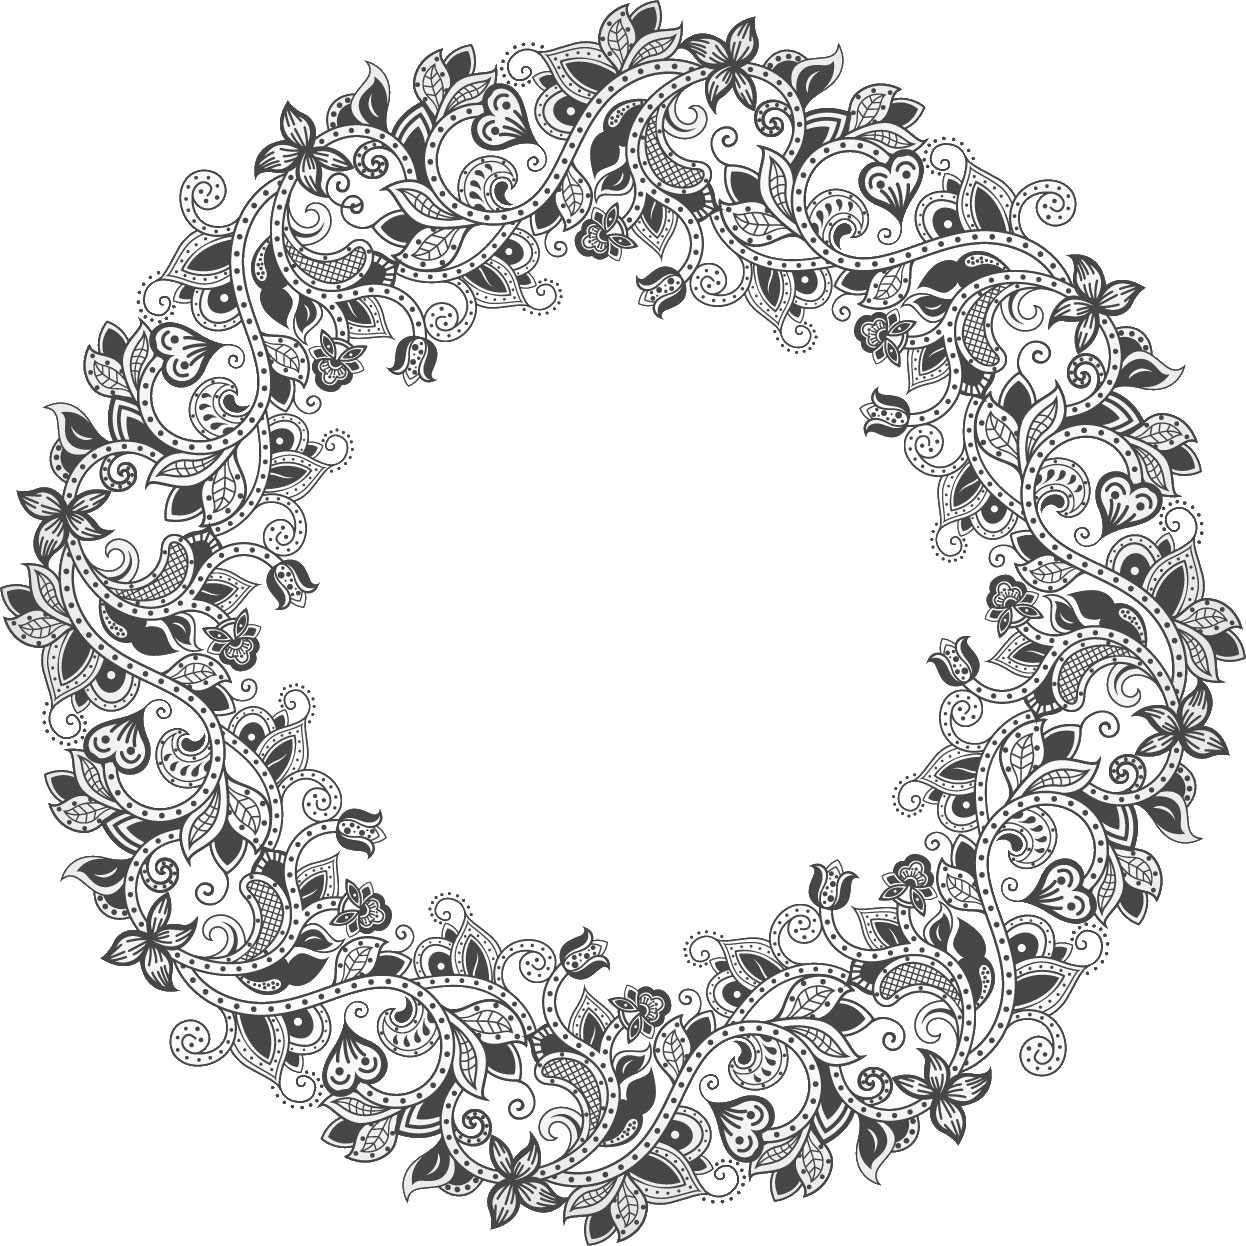 白黒 モノクロの花のイラスト フリー素材 フレーム枠no 7 花と蔦のイメージ